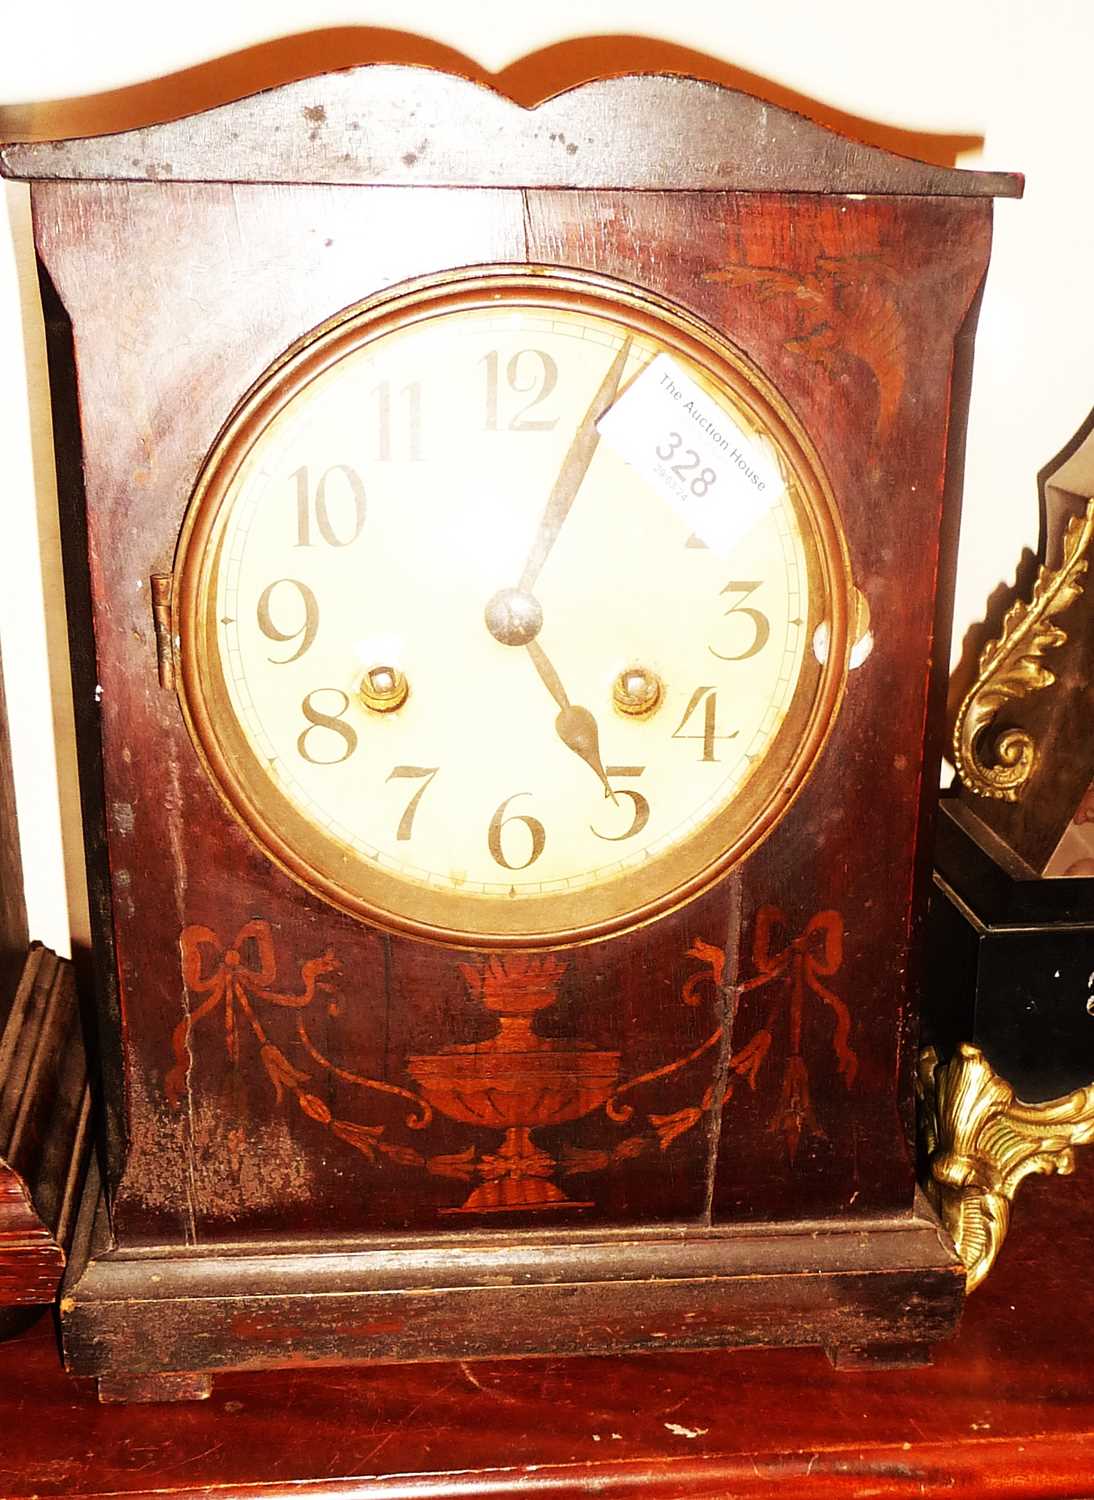 Edwardian inlaid mantle clock - Image 2 of 2